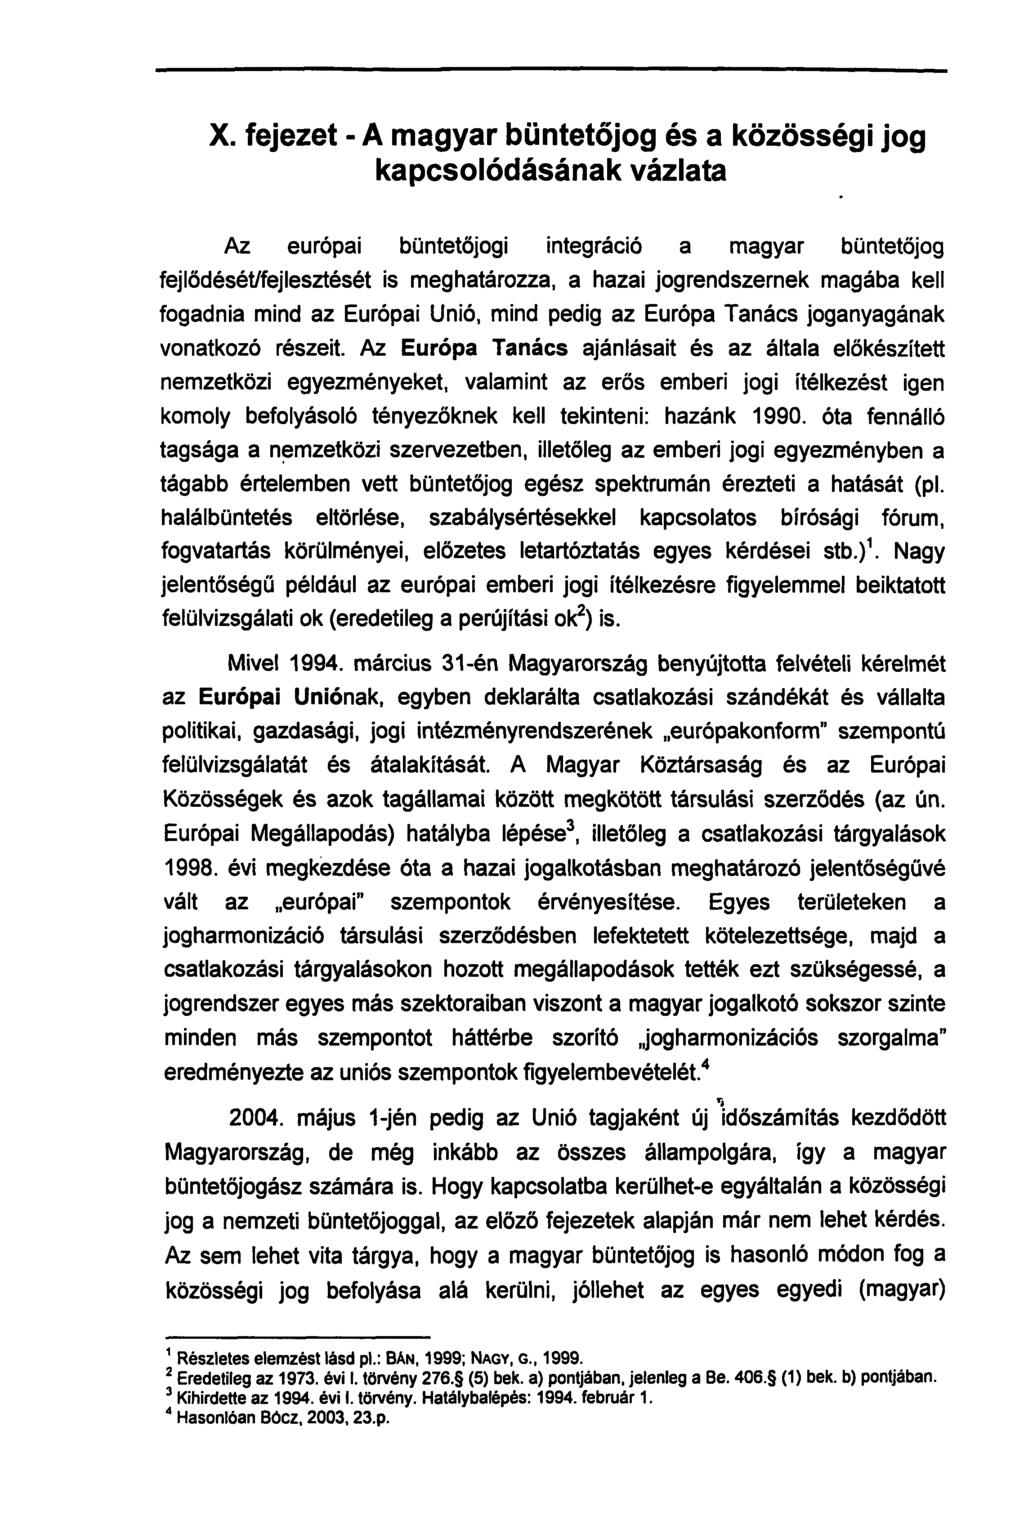 X. fejezet - A magyar büntetőjog és a közösségi jog kapcsolódásának vázlata Az európai büntetőjogi integráció a magyar büntetőjog fejlődését/fejlesztését is meghatározza, a hazai jogrendszernek